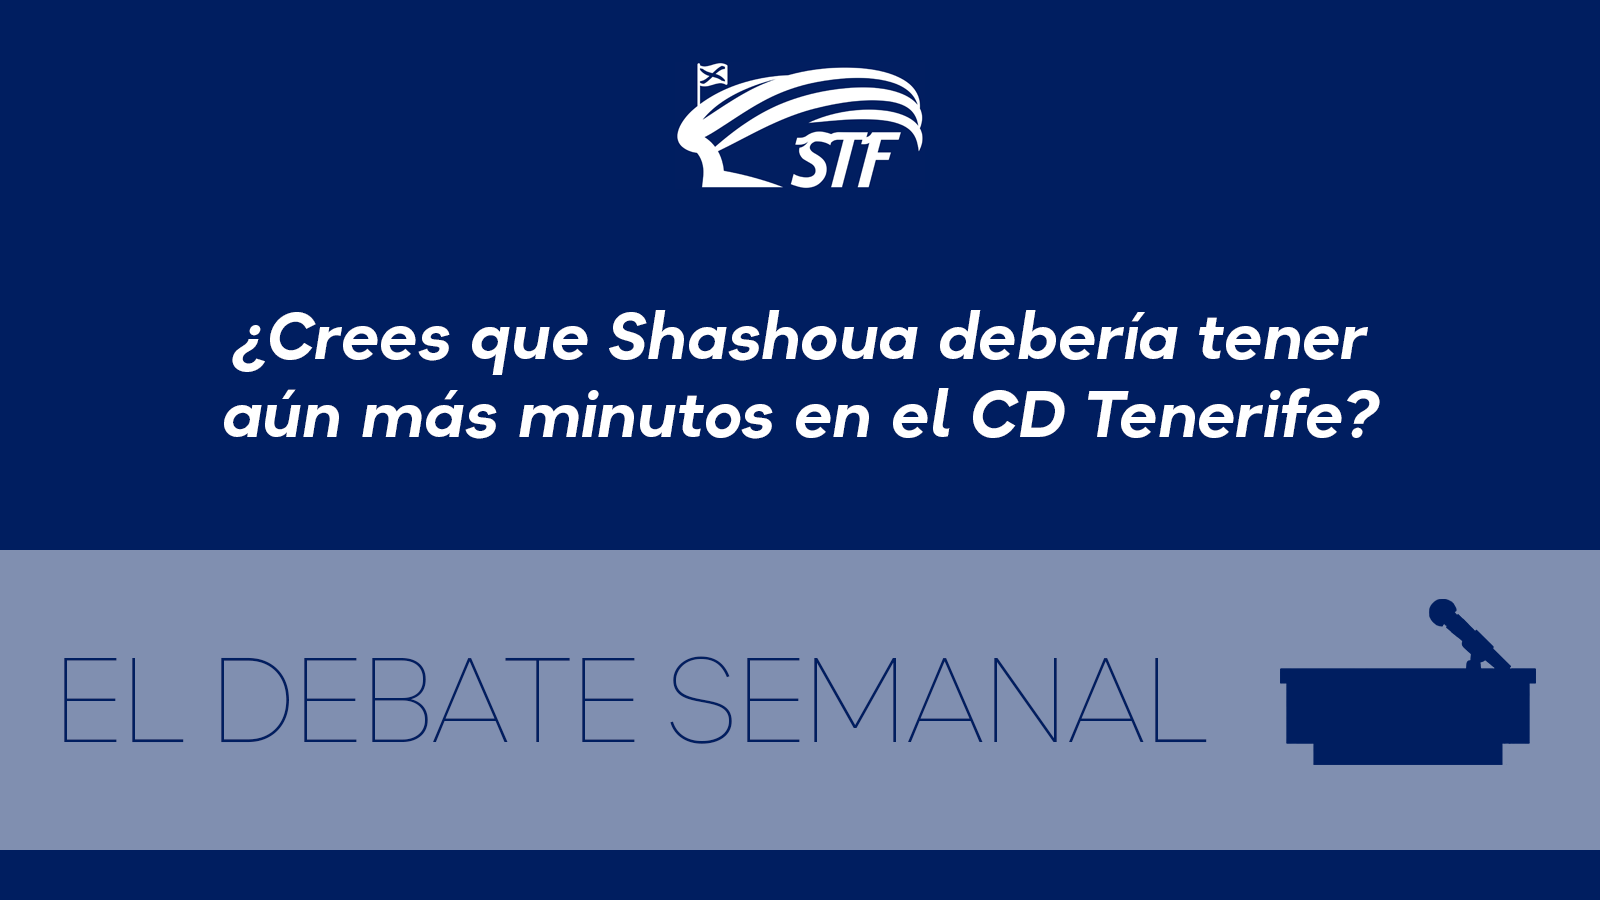 El Debate Semanal: ¿Crees que Shashoua debería tener aún más minutos con el CD Tenerife? El 95,65% dice sí